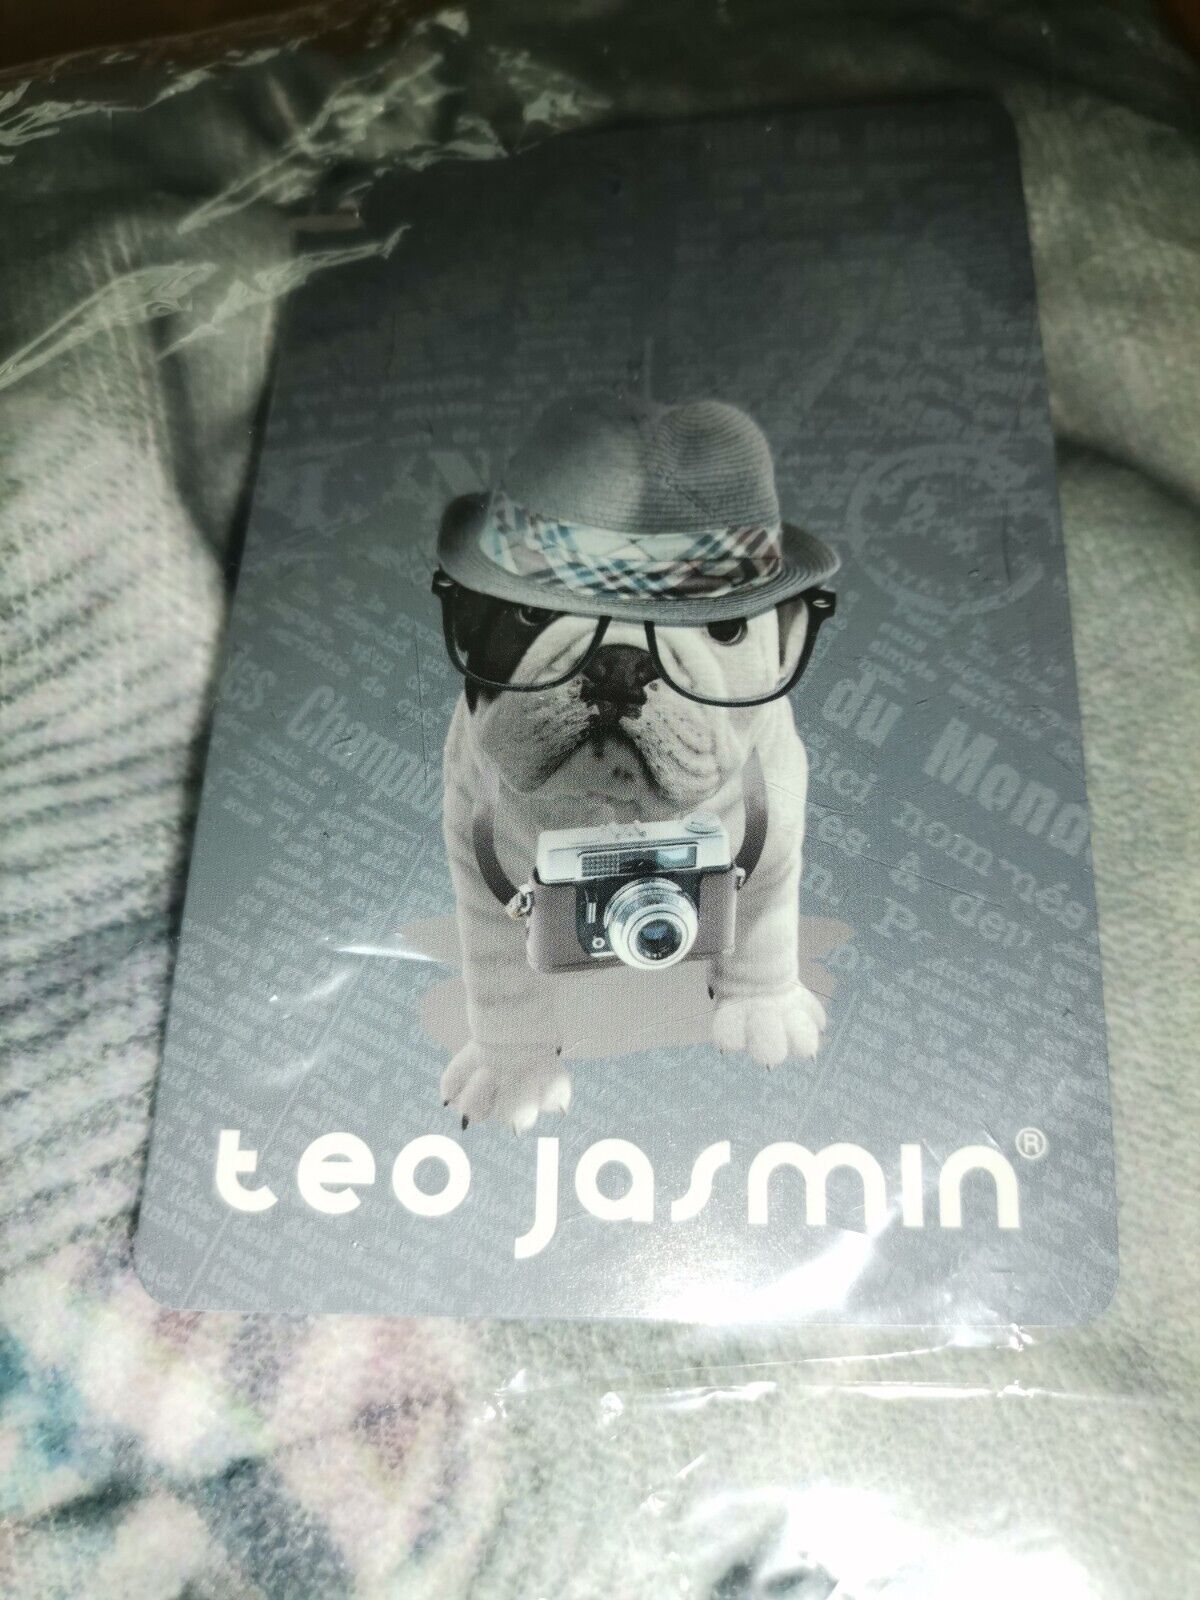 Teo Jasmin neuer Beutel, größe38x45cm,nagelneue Verpackung 